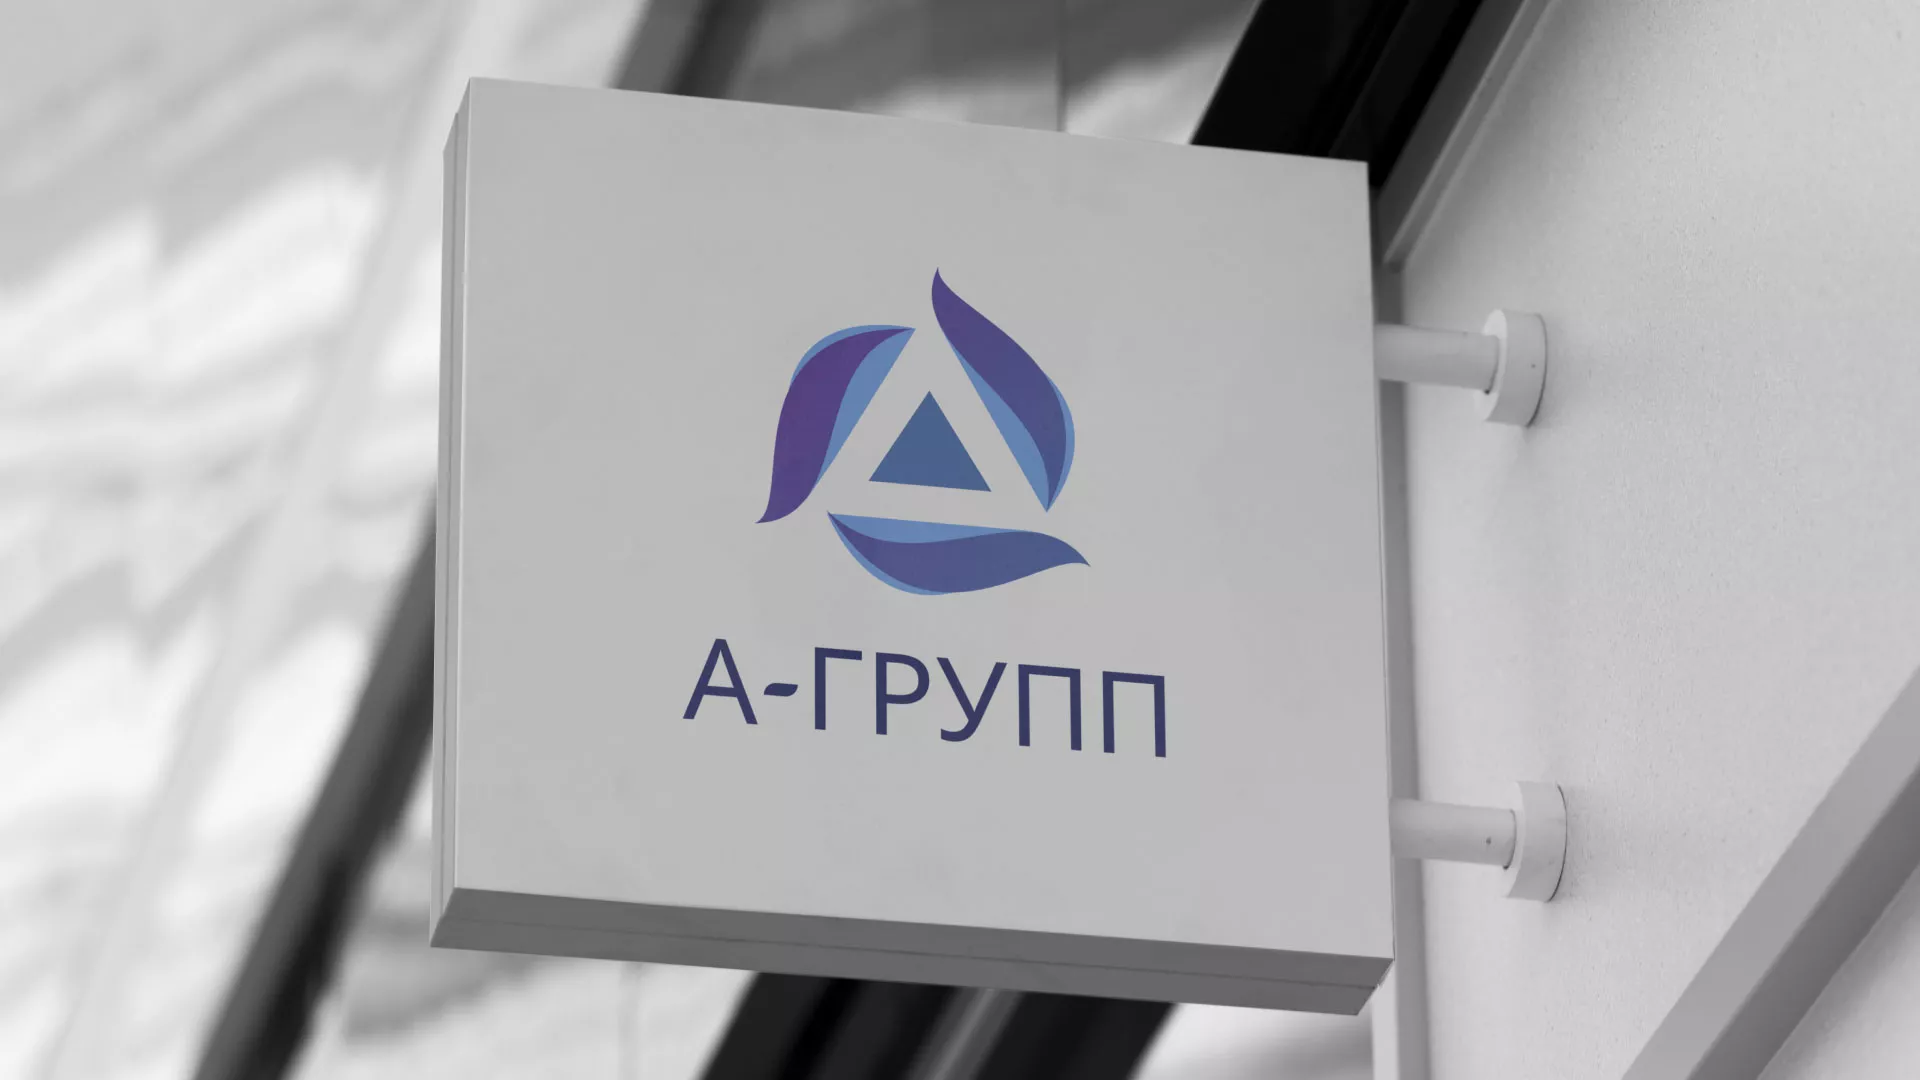 Создание логотипа компании «А-ГРУПП» в Михайловке